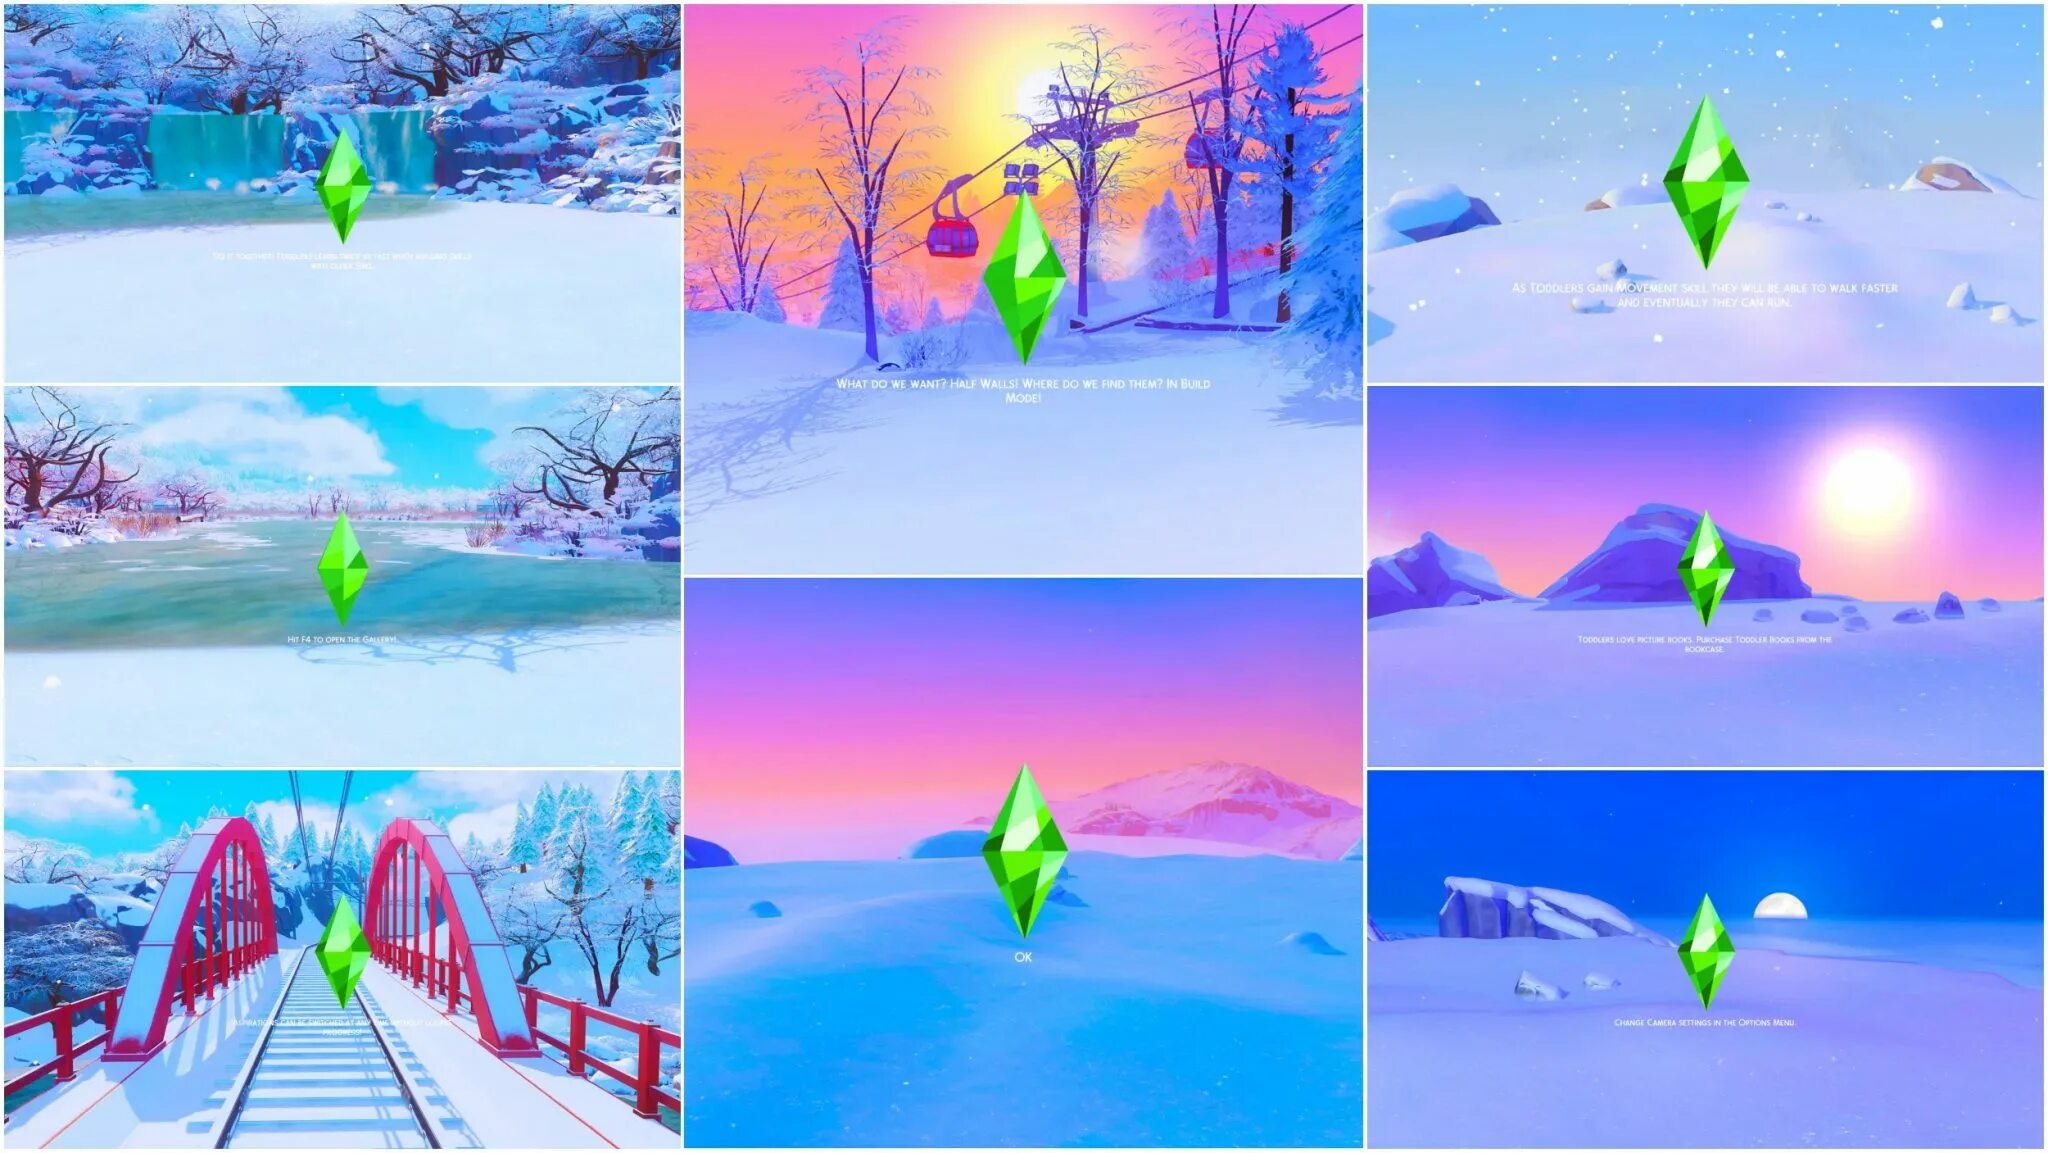 Sims 4 loading screen. Симс 4 гора Комореби. Симс 4 экран. Вершина горы Комореби.